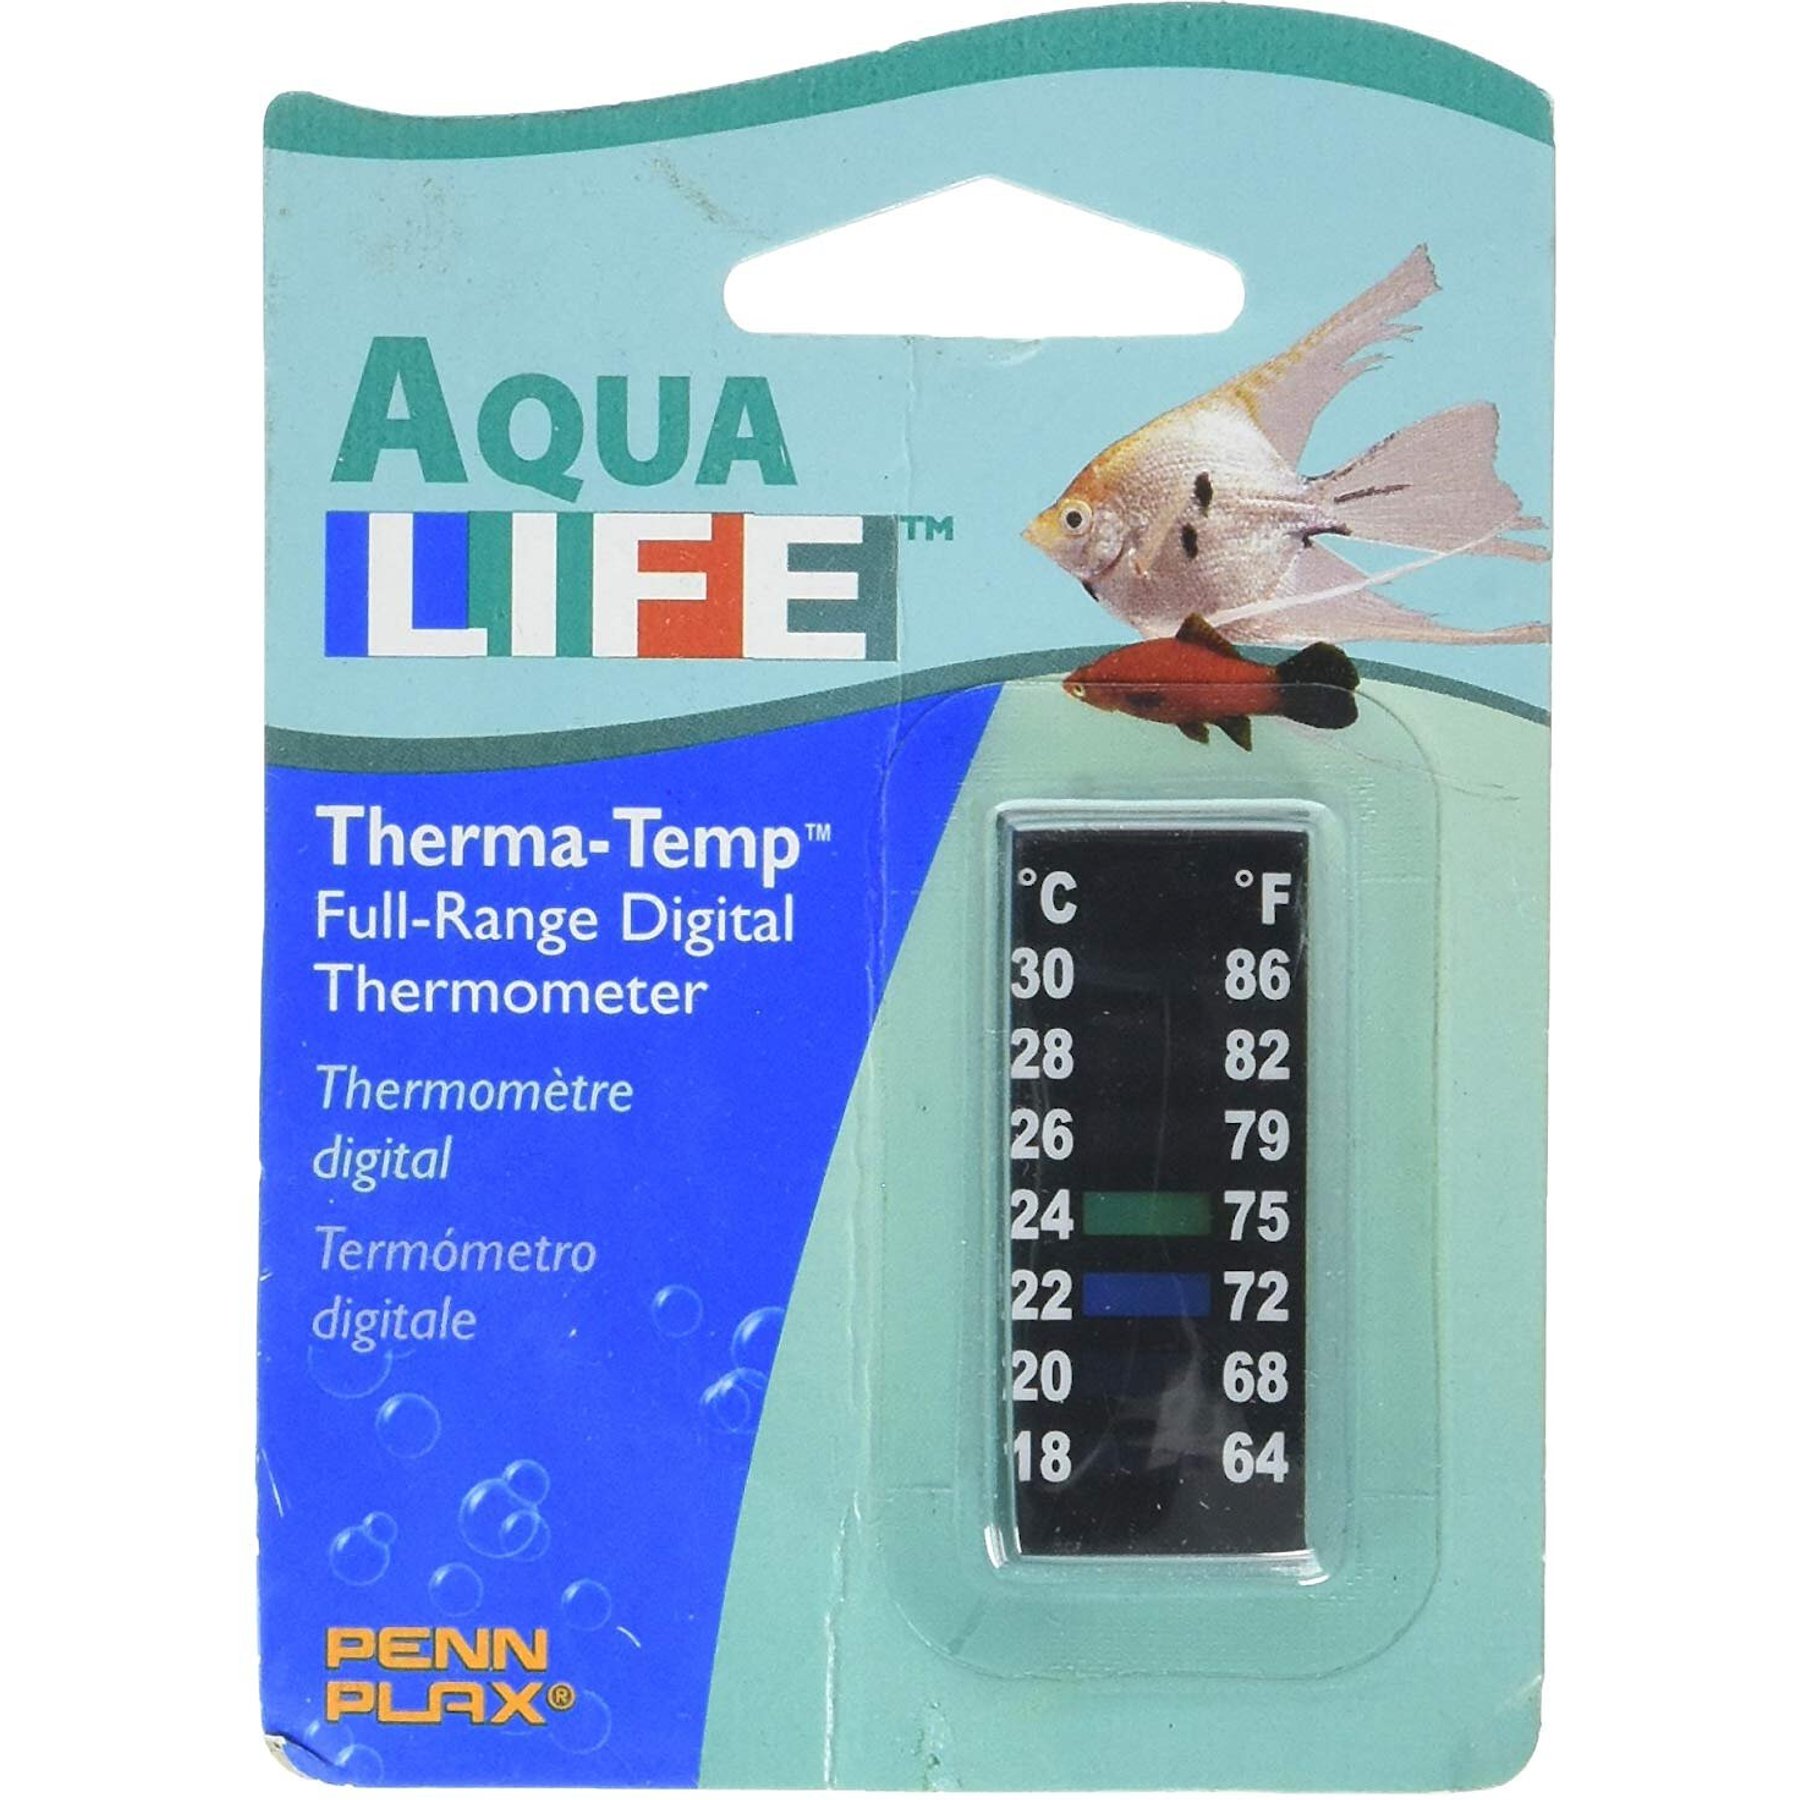 AQUANEAT 2 Pack Aquarium Thermometer Digital Reptile Fish Tank